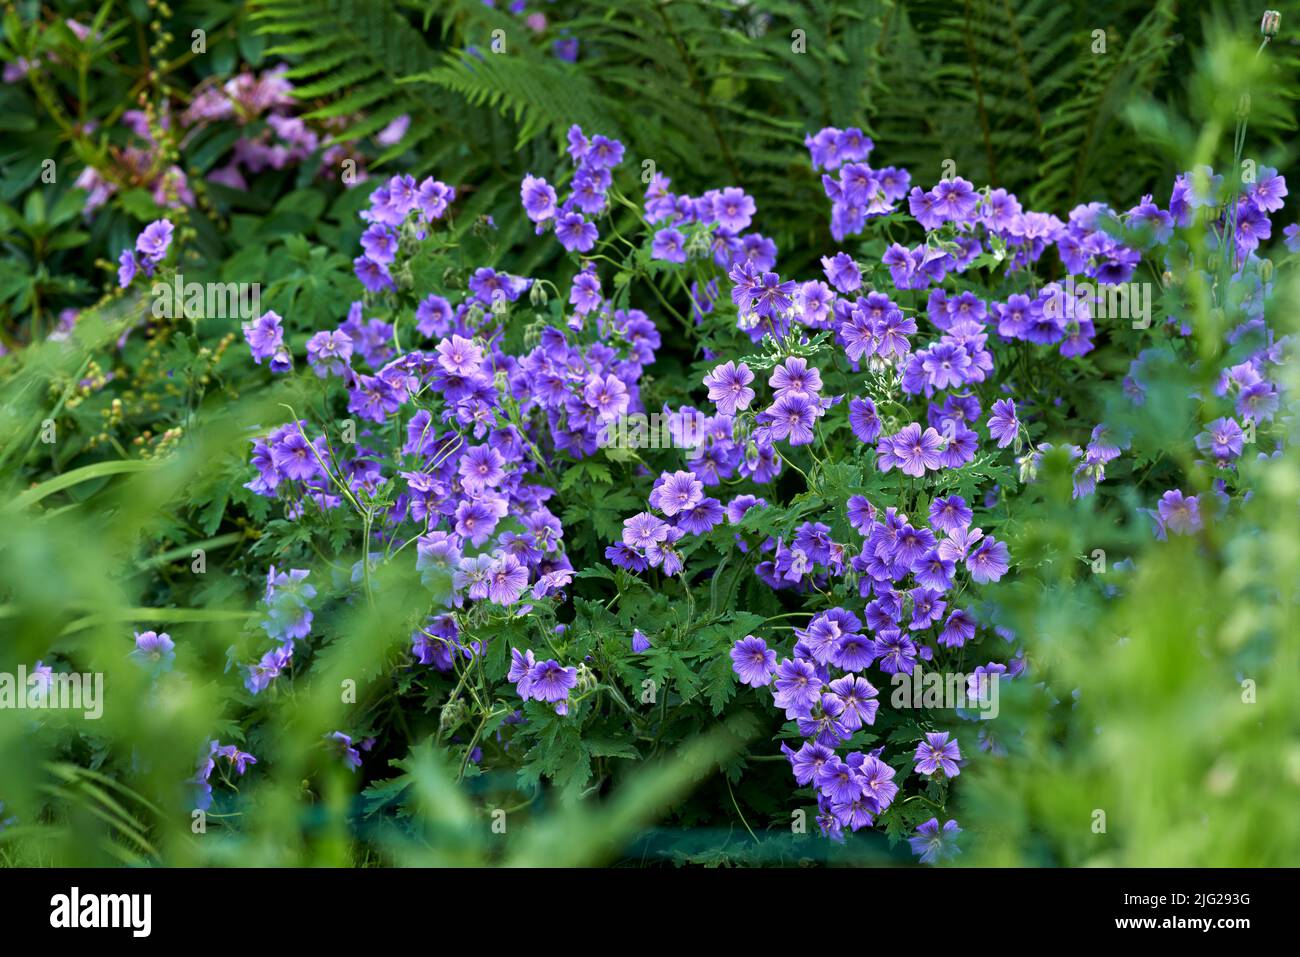 Prato geranio fiori crescere in una foresta verde in estate. Piante viola che fioriscono in un lussureggiante giardino botanico in primavera. Bella fioritura violetta Foto Stock